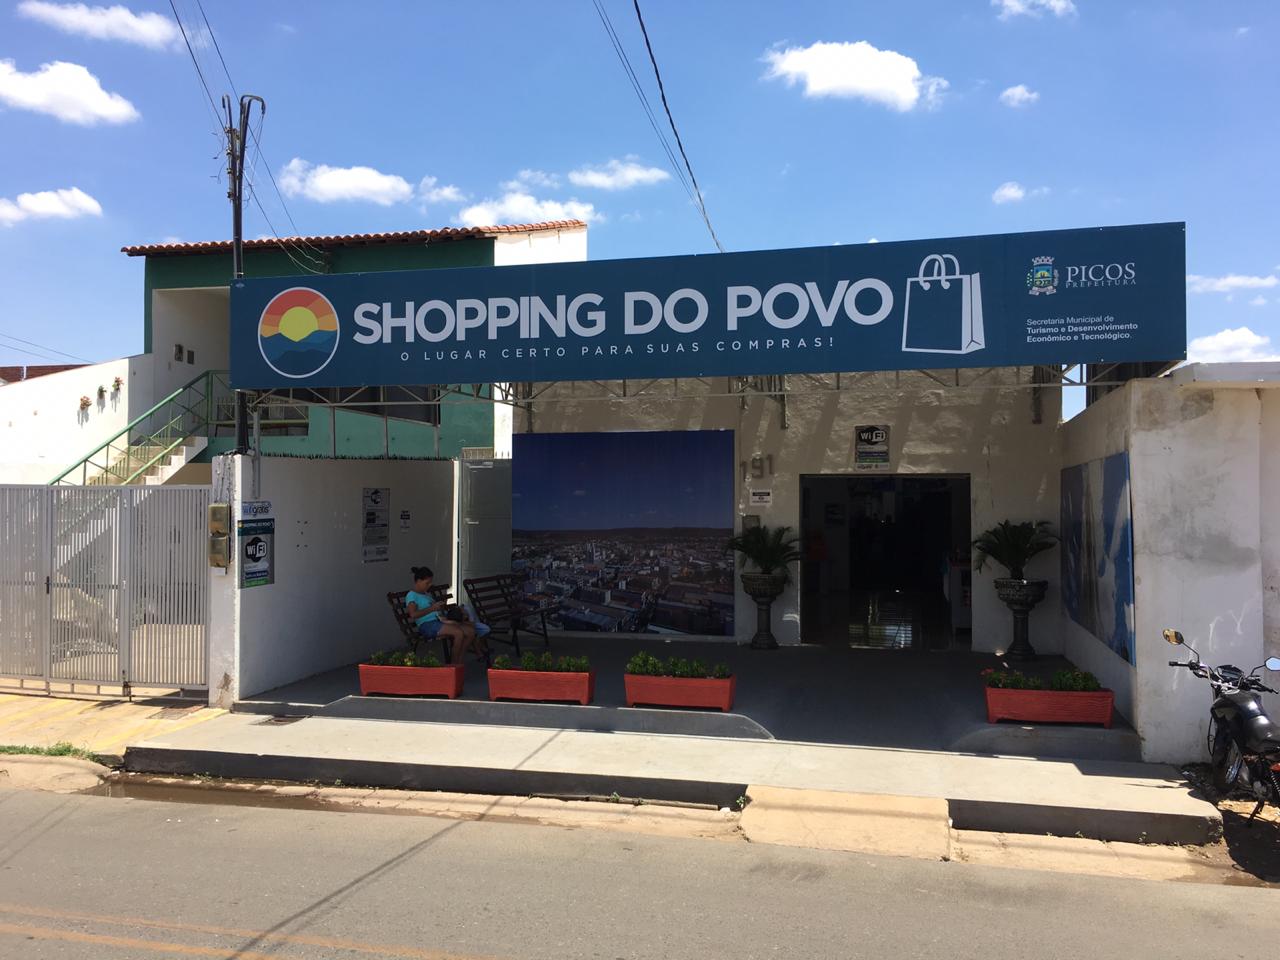 Shopping do Povo em Picos